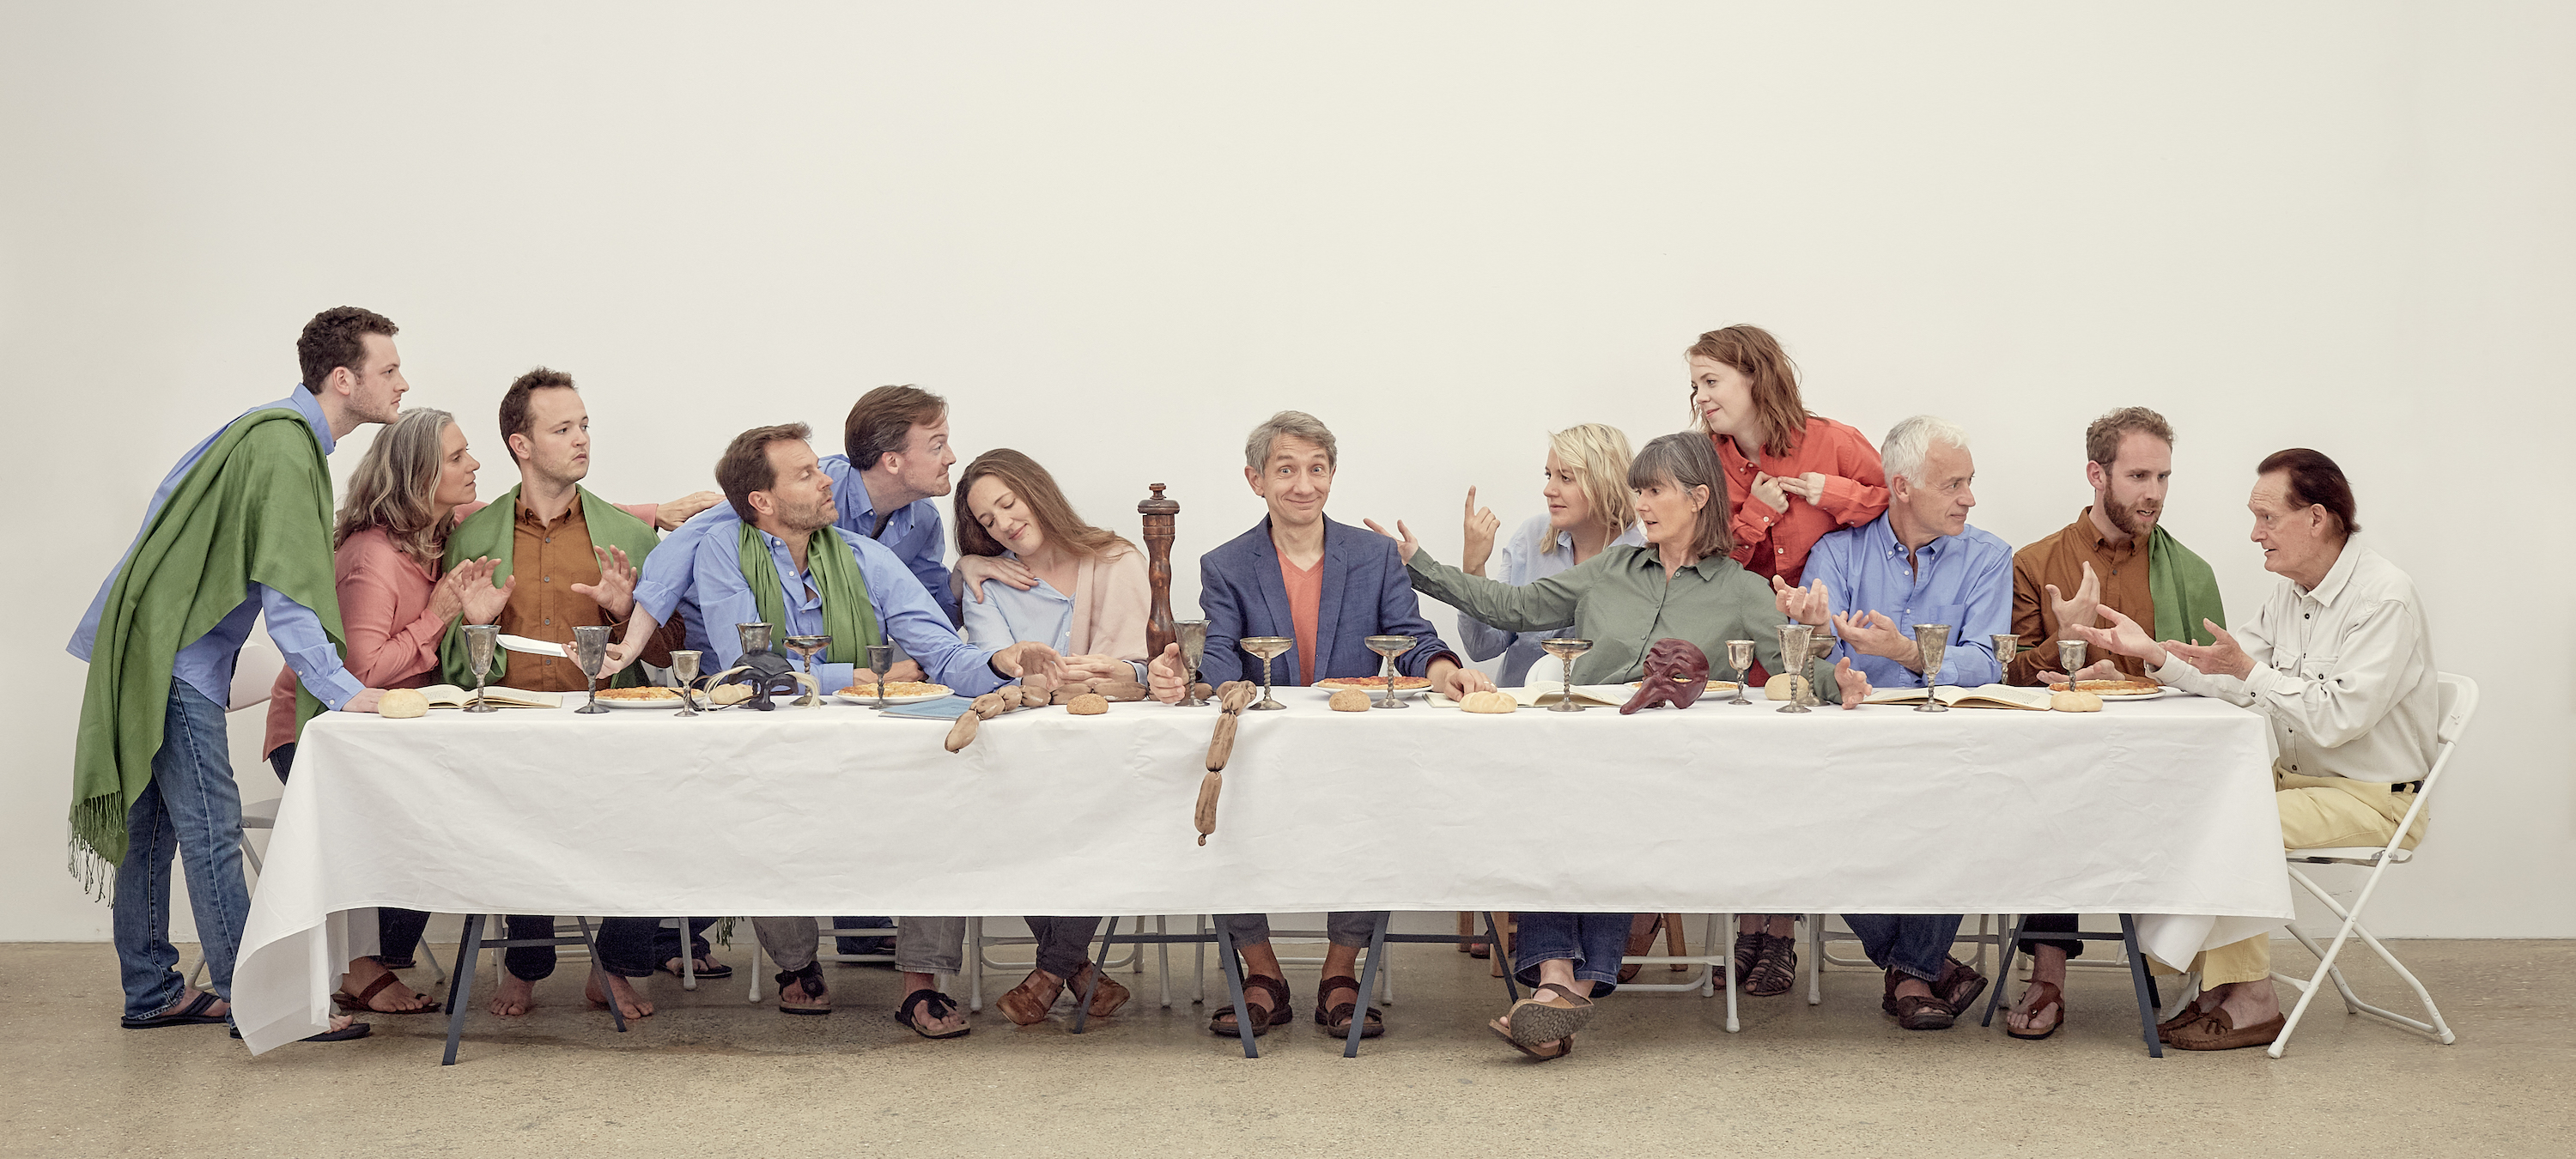 The Last Supper © Matt Brodie